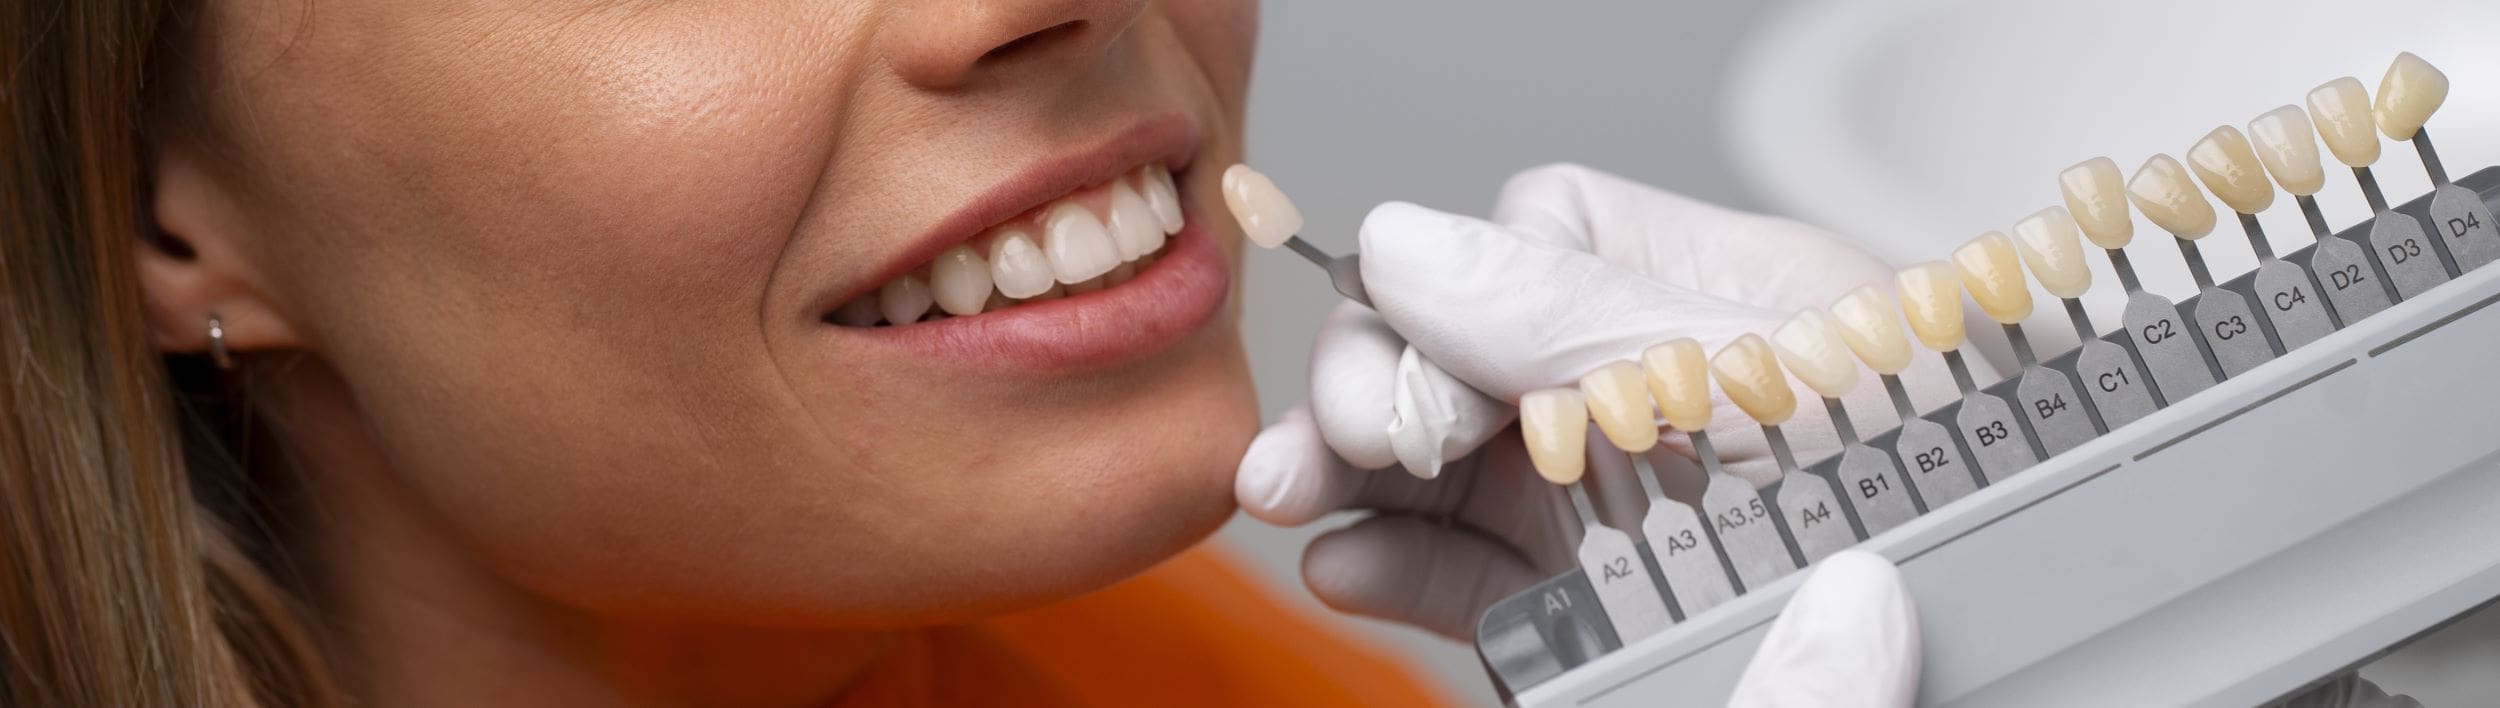 Dentist holds up veneer samples to women's teeth